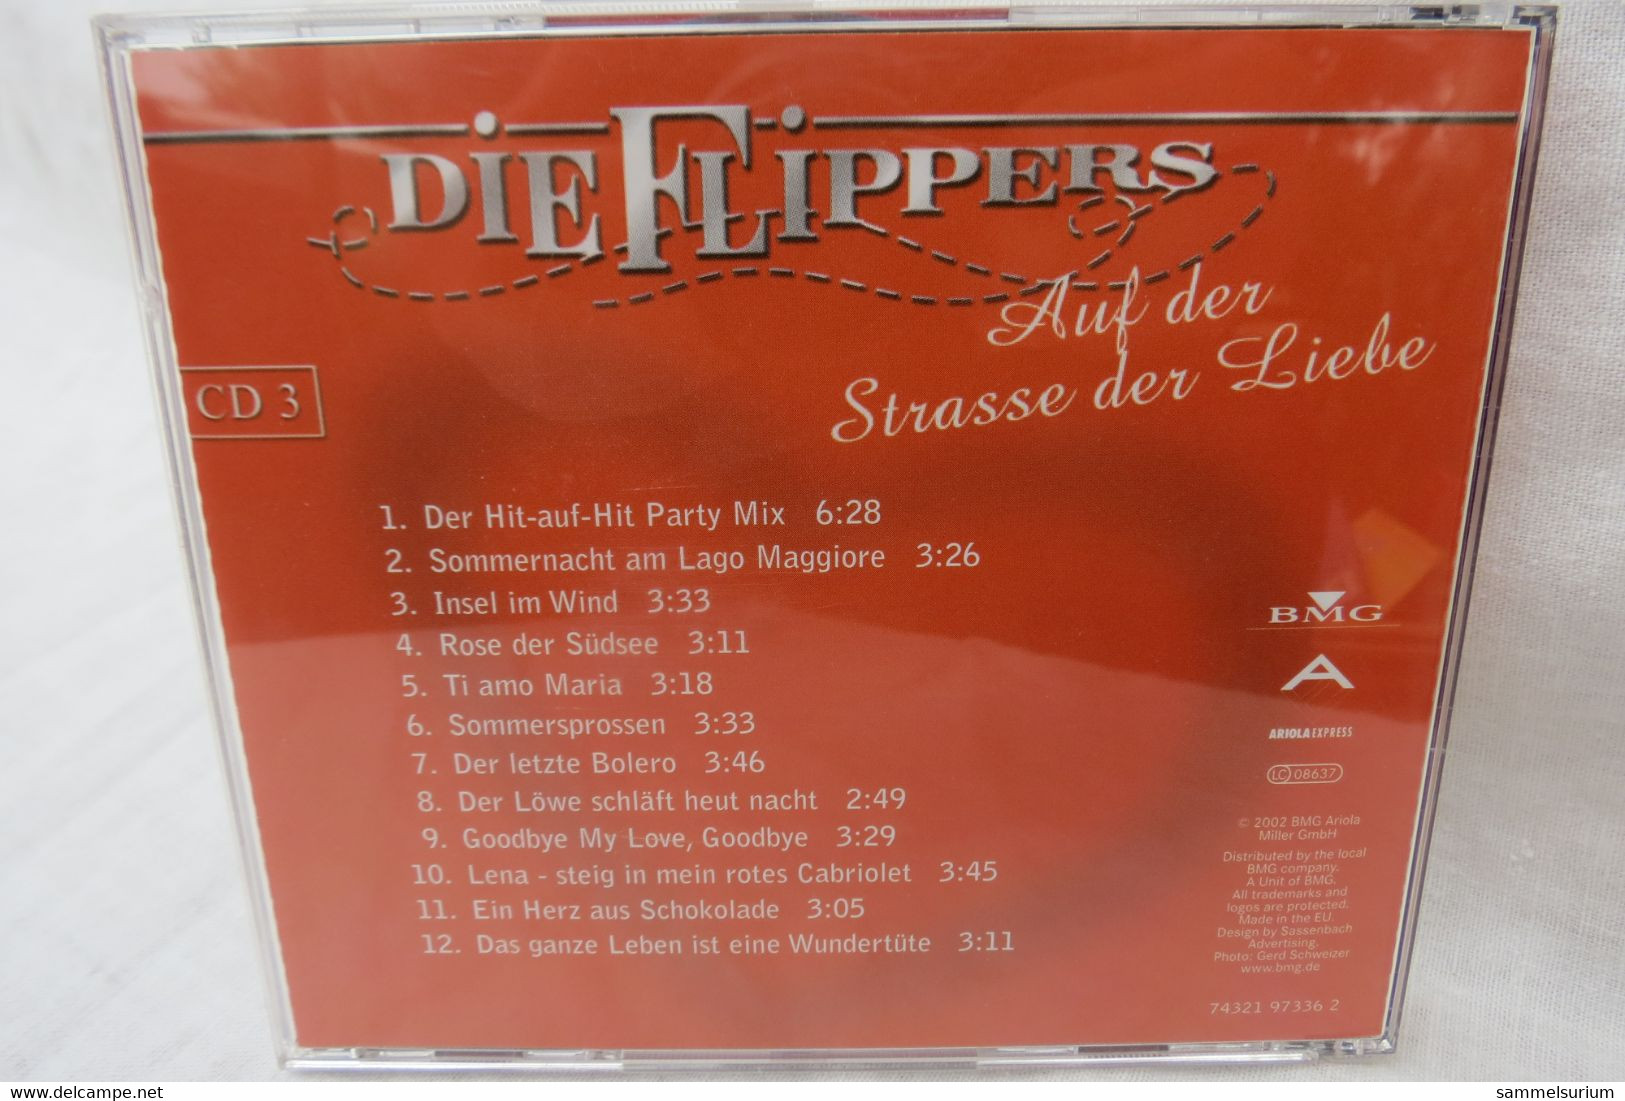 CD "Die Flippers" CD 3 Auf Der Strasse Der Liebe - Autres - Musique Allemande